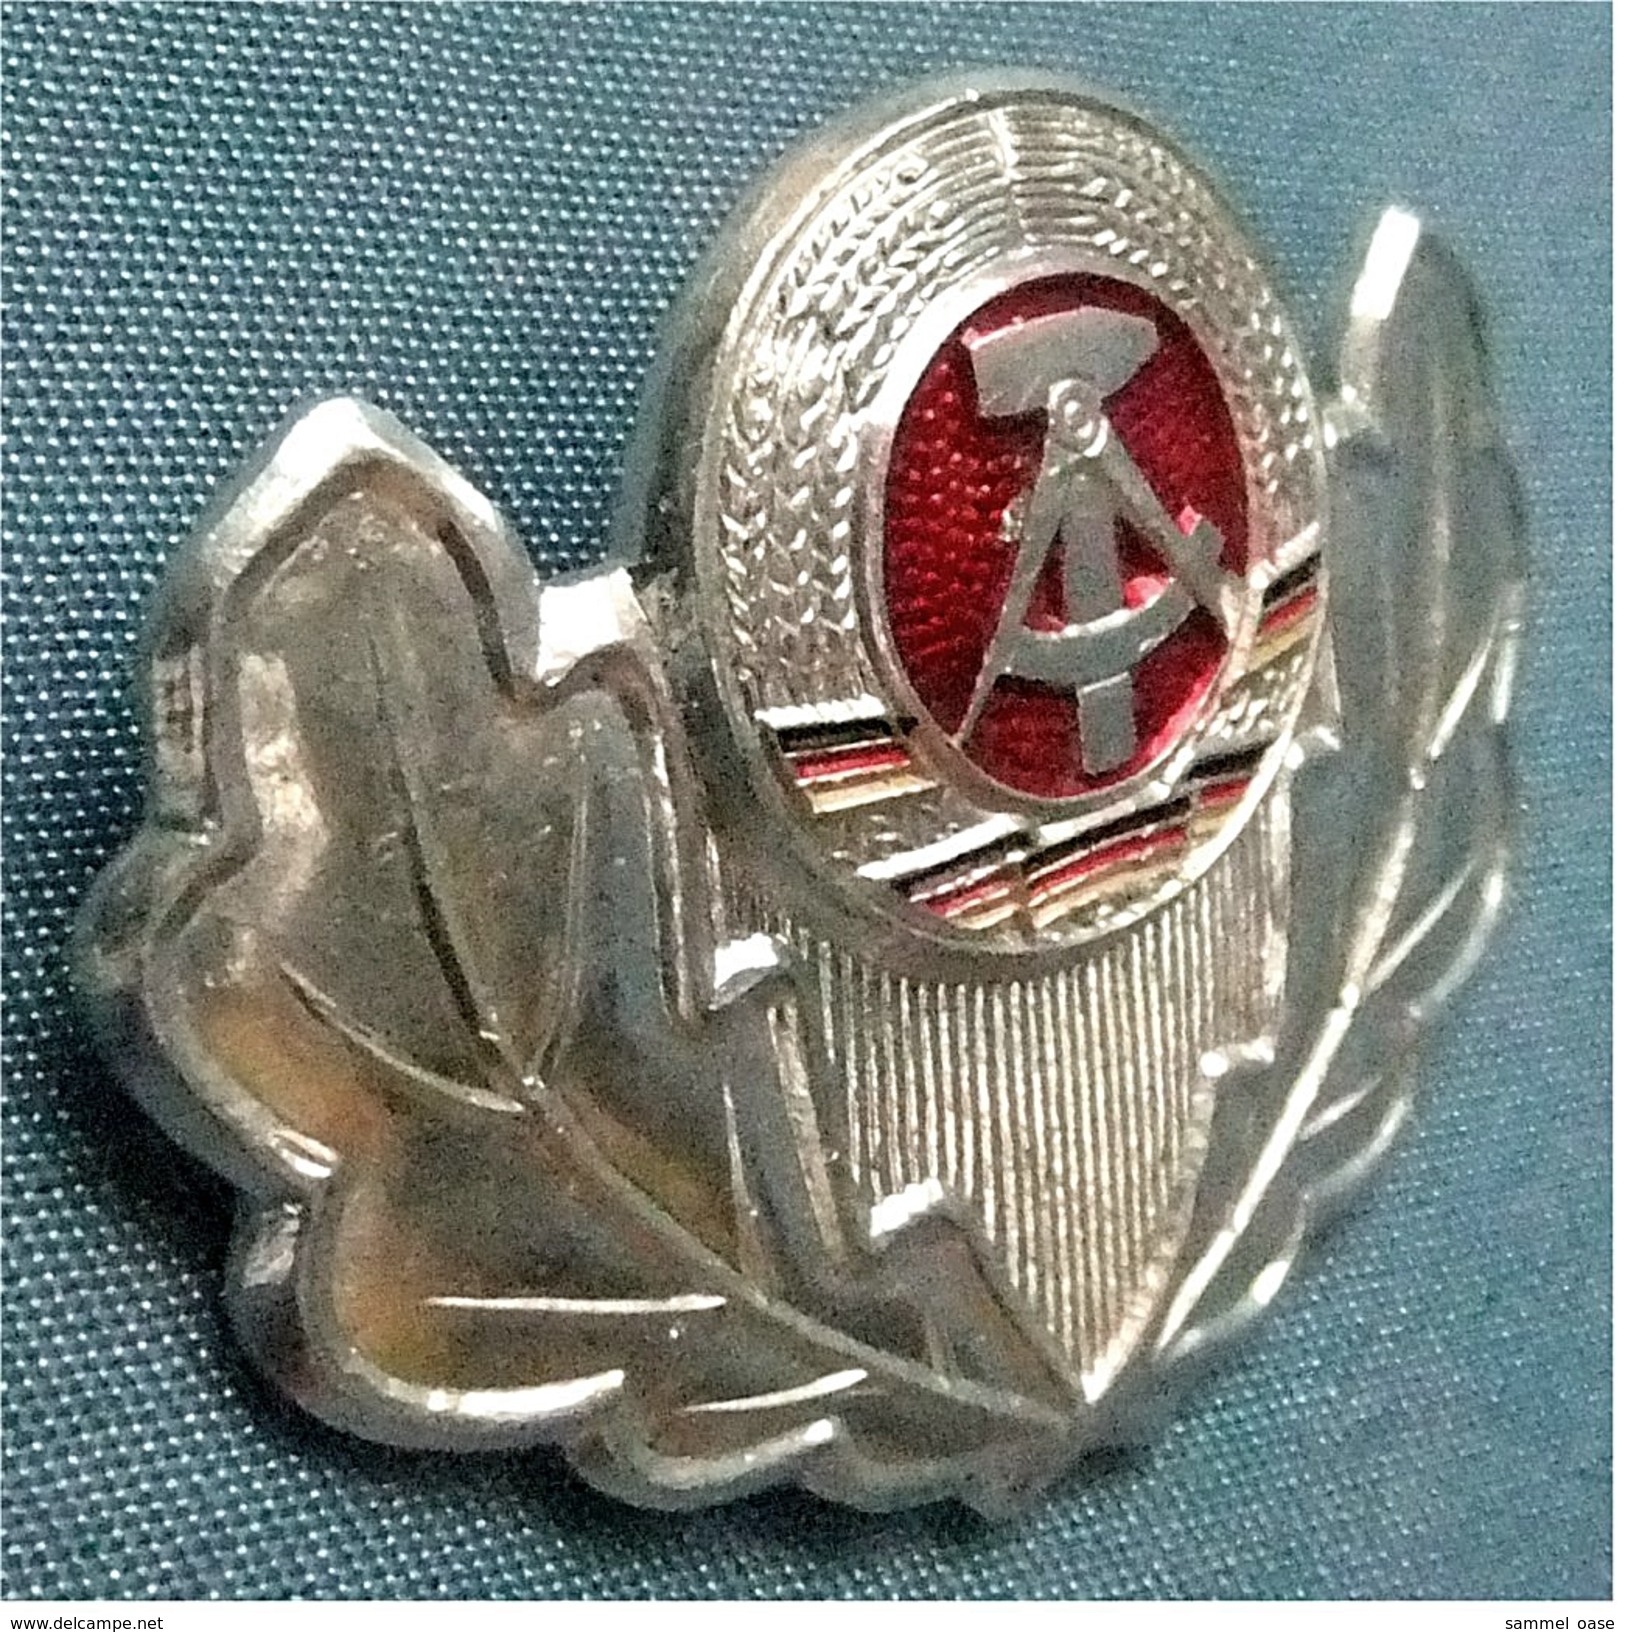 Mützenemblem DDR Volksarmee Wappen Eichenlaub - Mützenabzeichen Mütze NVA  -  Ca. 45 X 35 Mm - Armee